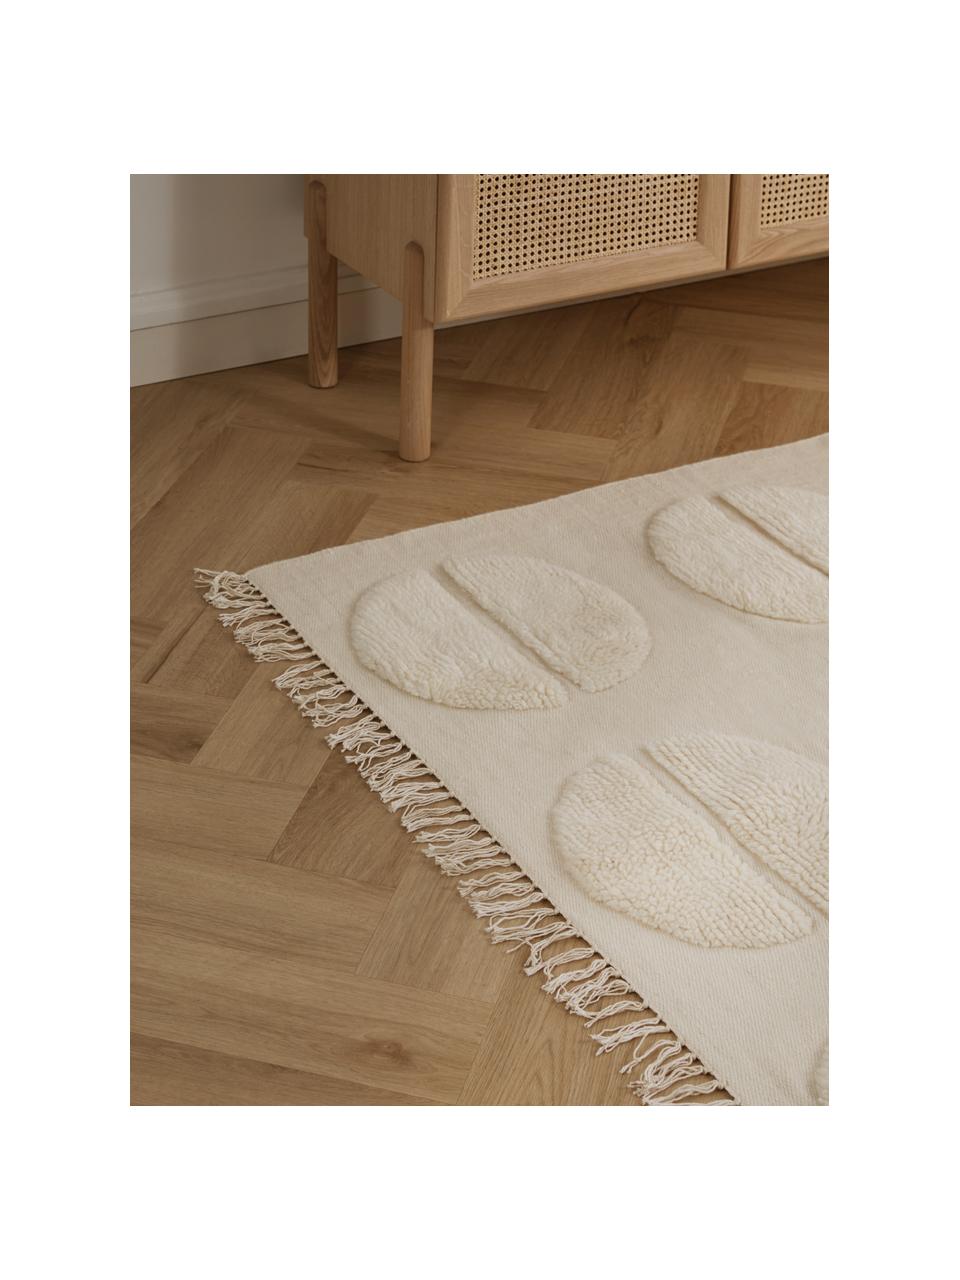 Tappeto in lana beige taftato a mano con effetto alto-basso Anica, Bianco crema, Larg. 80 x Lung. 150 cm (taglia XS)